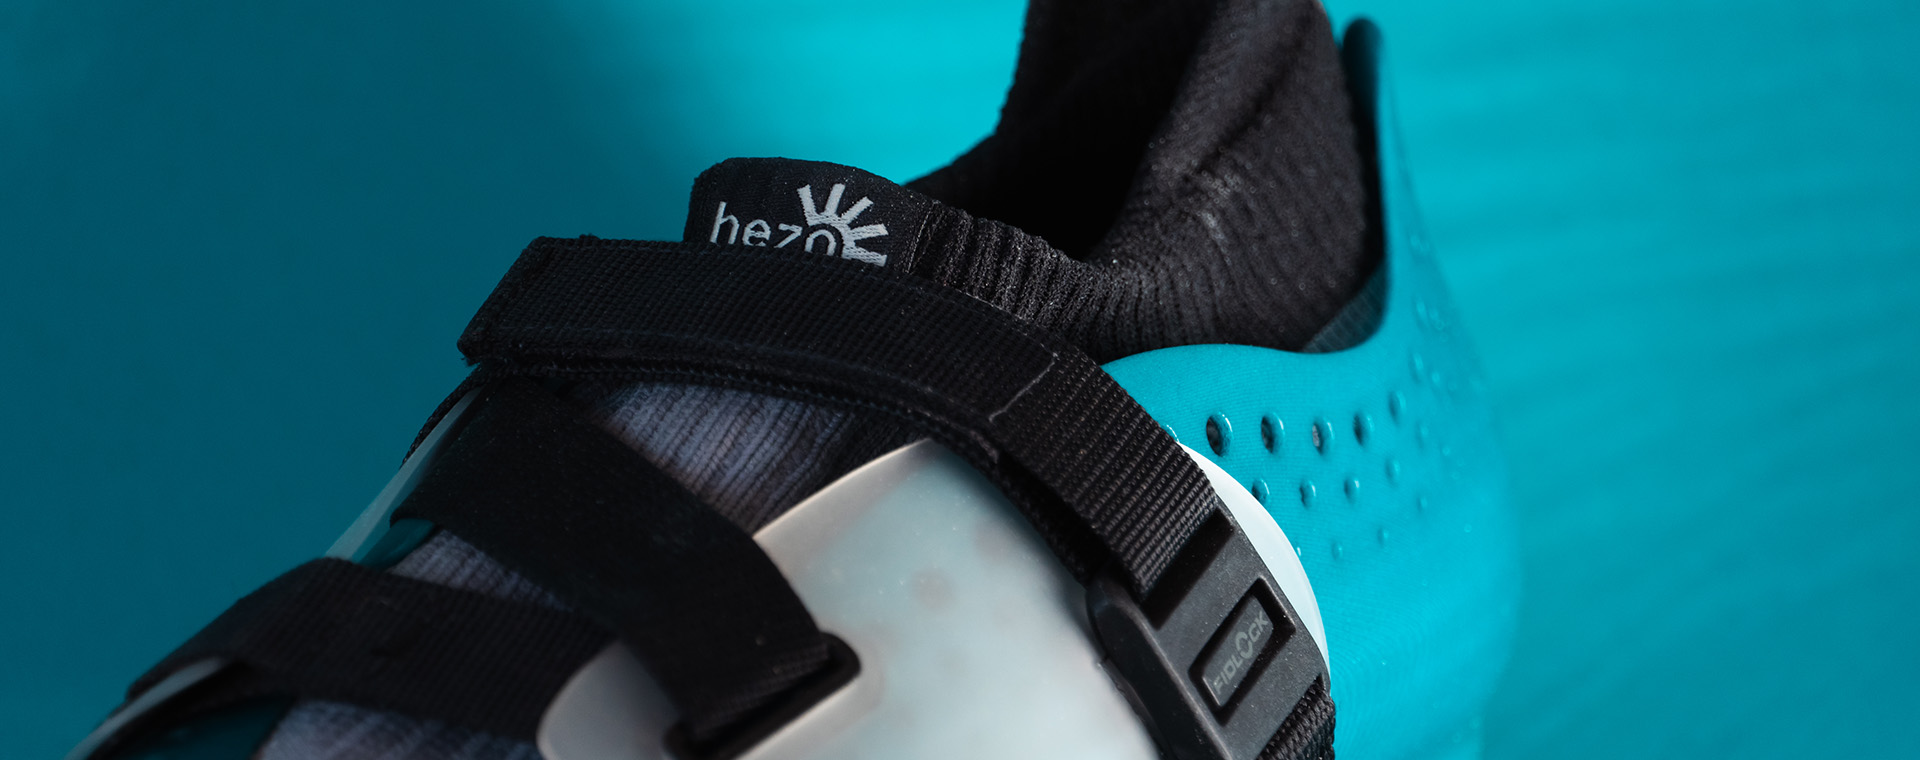 Closeup HEZO shoe with FIDLOCK buckle